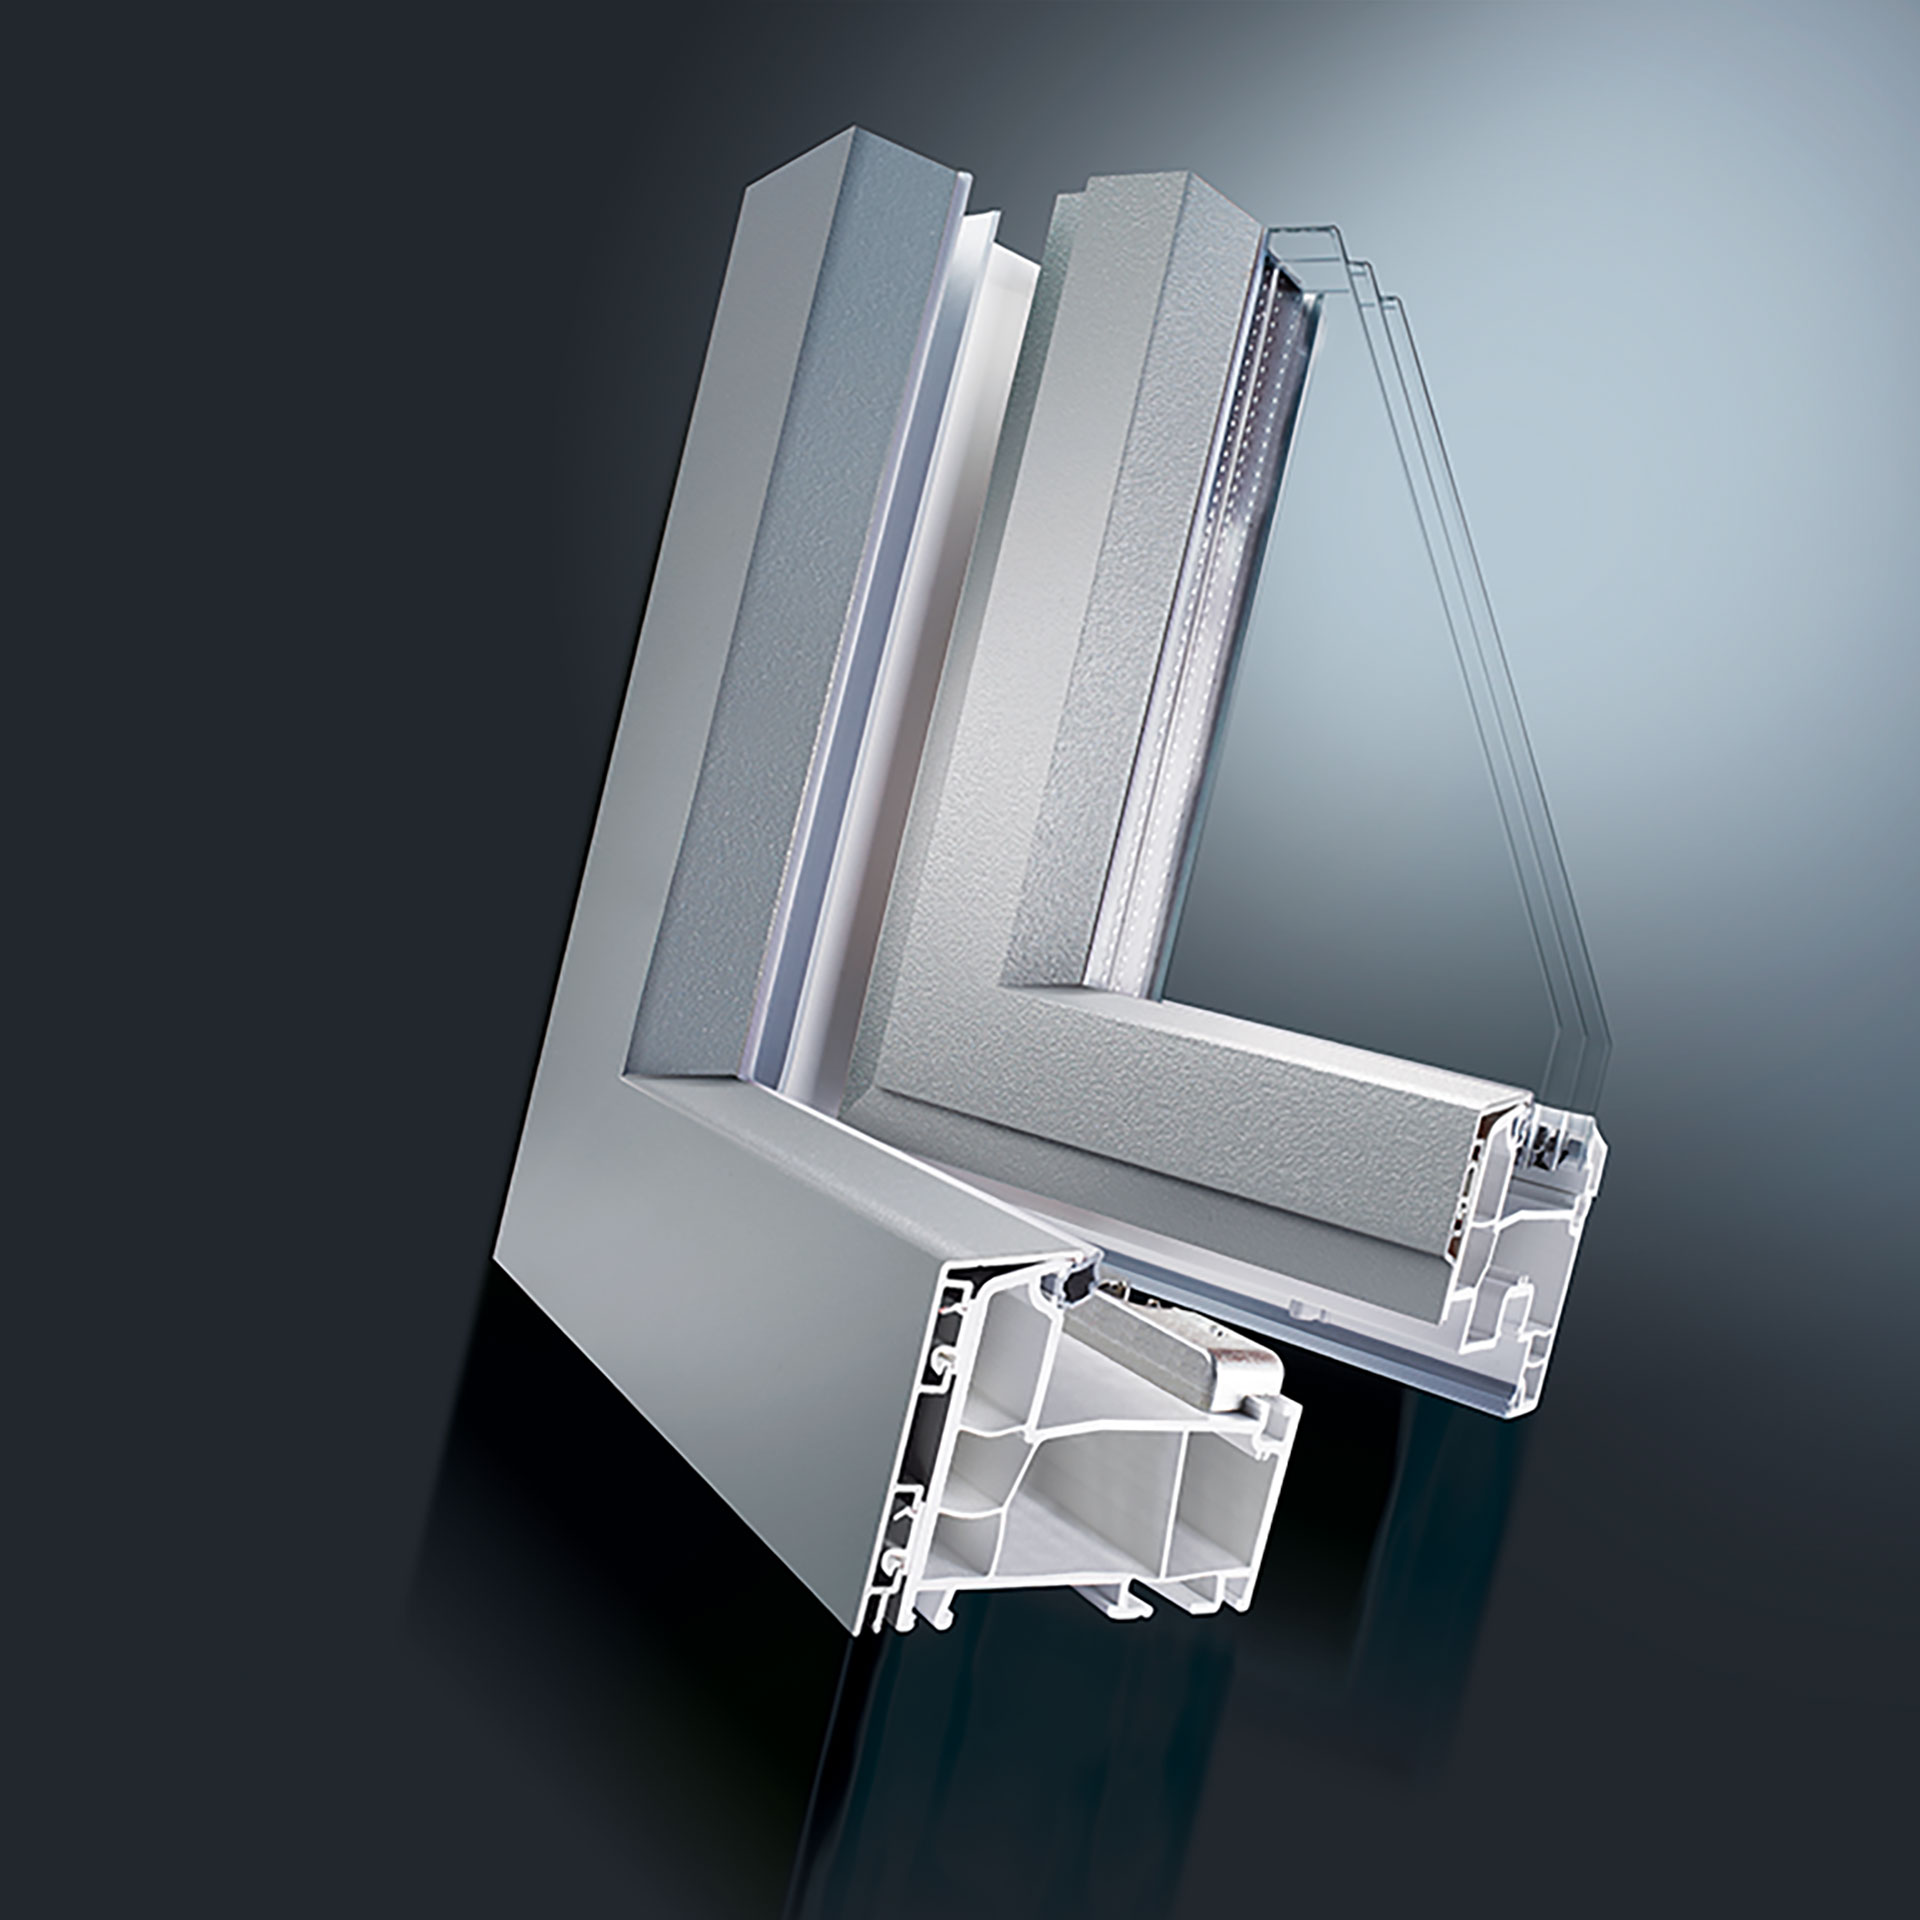 Das Kunststoff-Aluminium System DECCO vereint die Vorteile beider Materialien. Die Lösung lässt sich vom Fensterbauer  einfach und schnell montieren. Es ist keine Sonderfertigung nötig. Die Fenster verbleibt in der Standardfertigungslinie.